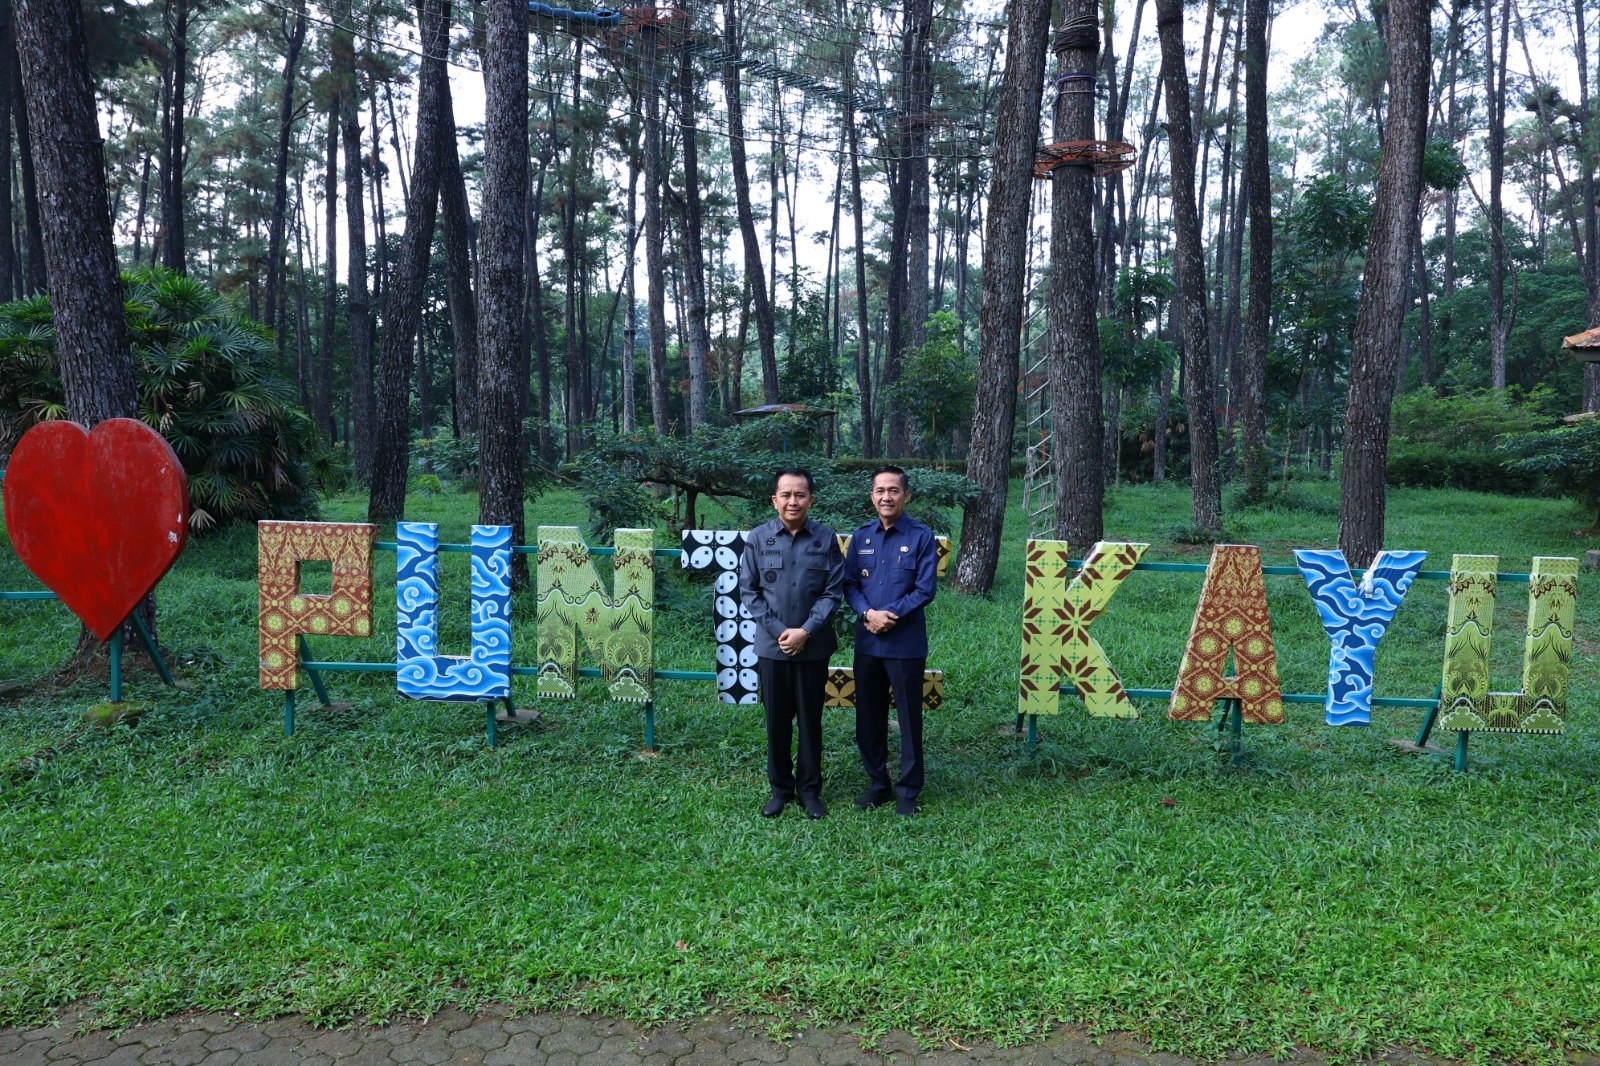 Kolaborasi Pj Walikota Ratu Dewa dan Pj Gubernur Sumsel, Taman Kota dan Objek Wisata di Palembang Dipercantik